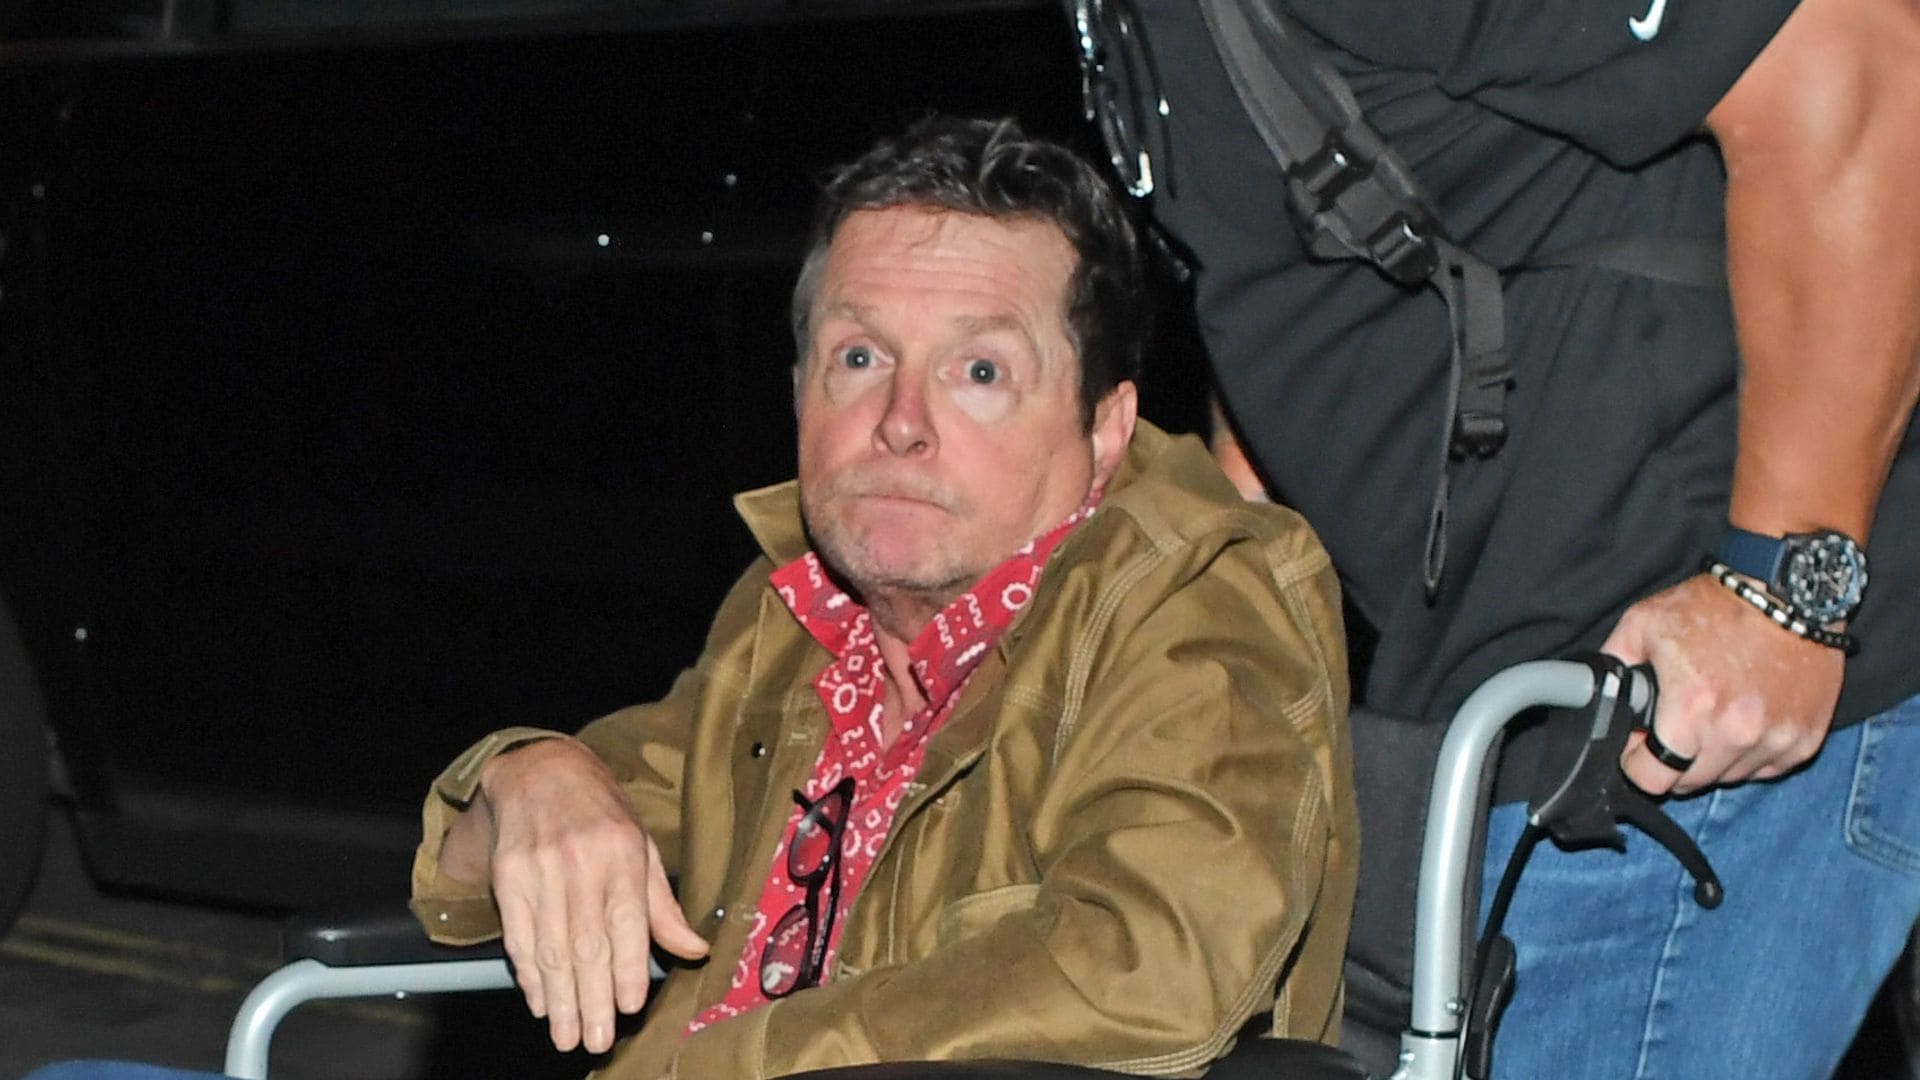 Preocupación por el estado de salud de Michael J Fox tras las imágenes de sus últimas apariciones públicas